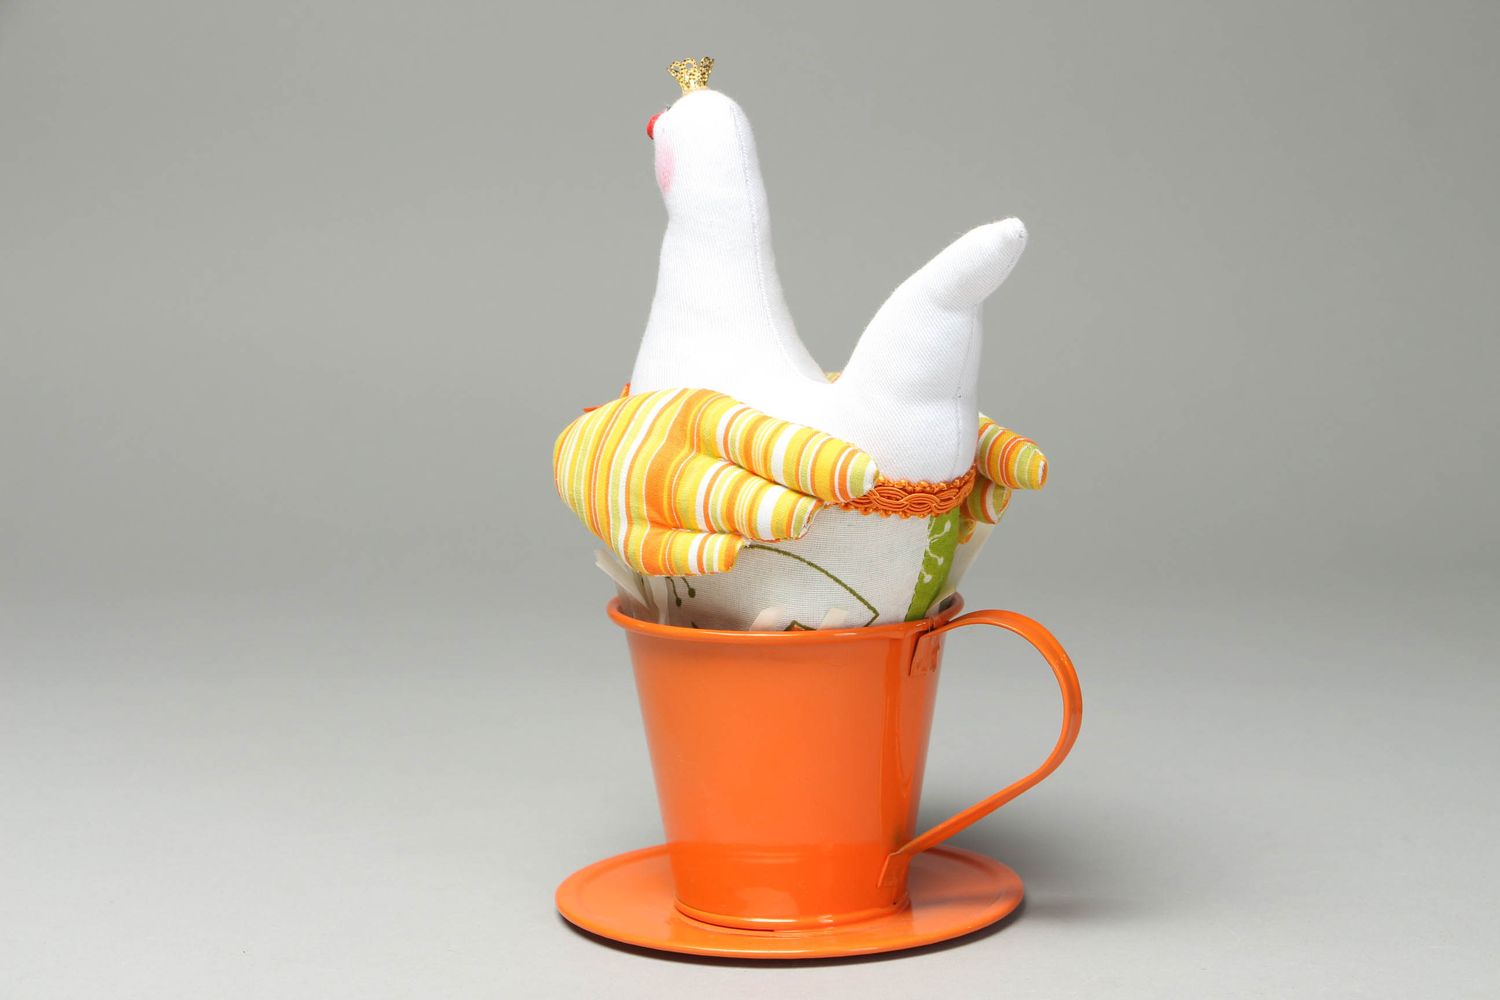 Мягкая интерьерная игрушка Курочка в оранжевой чашке фото 3